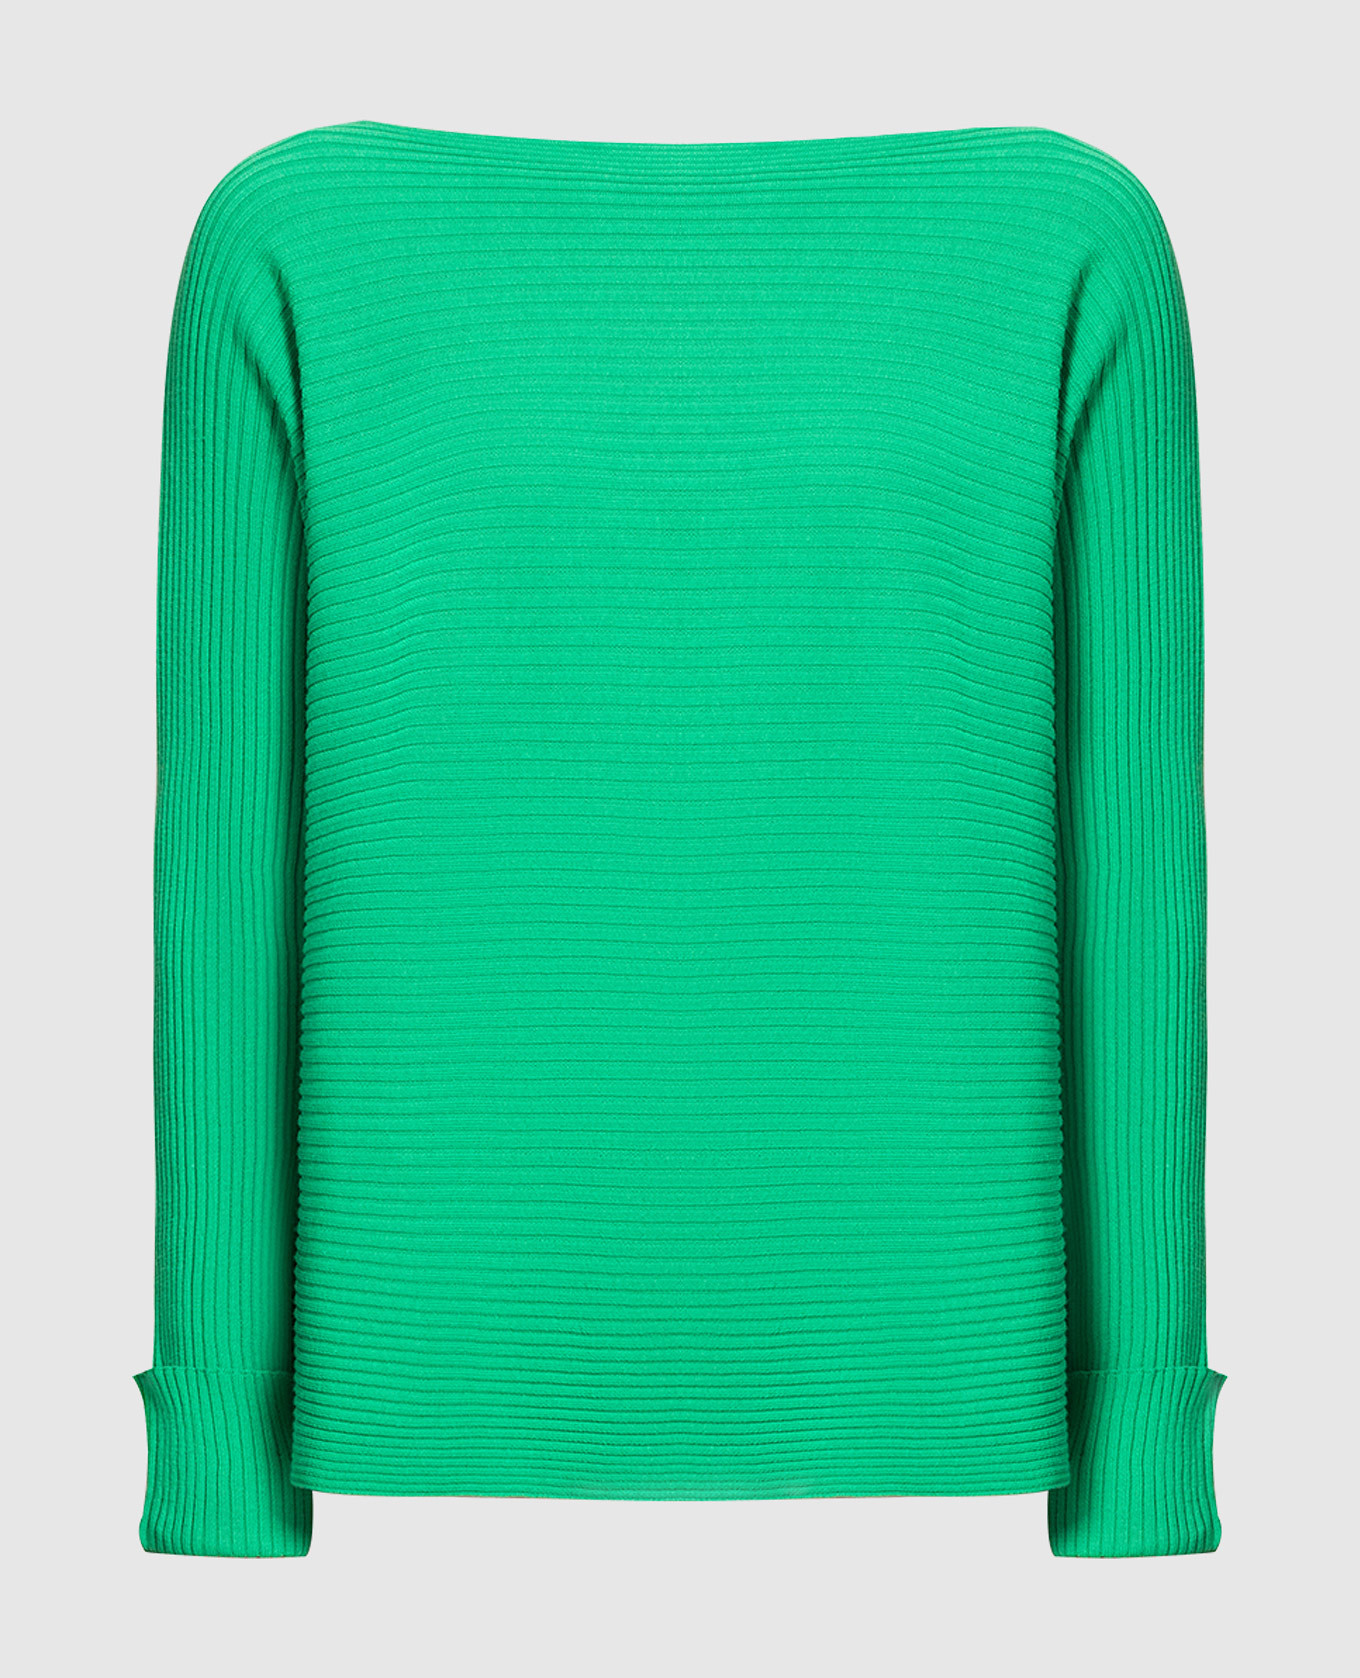 Scambio green striped jumper